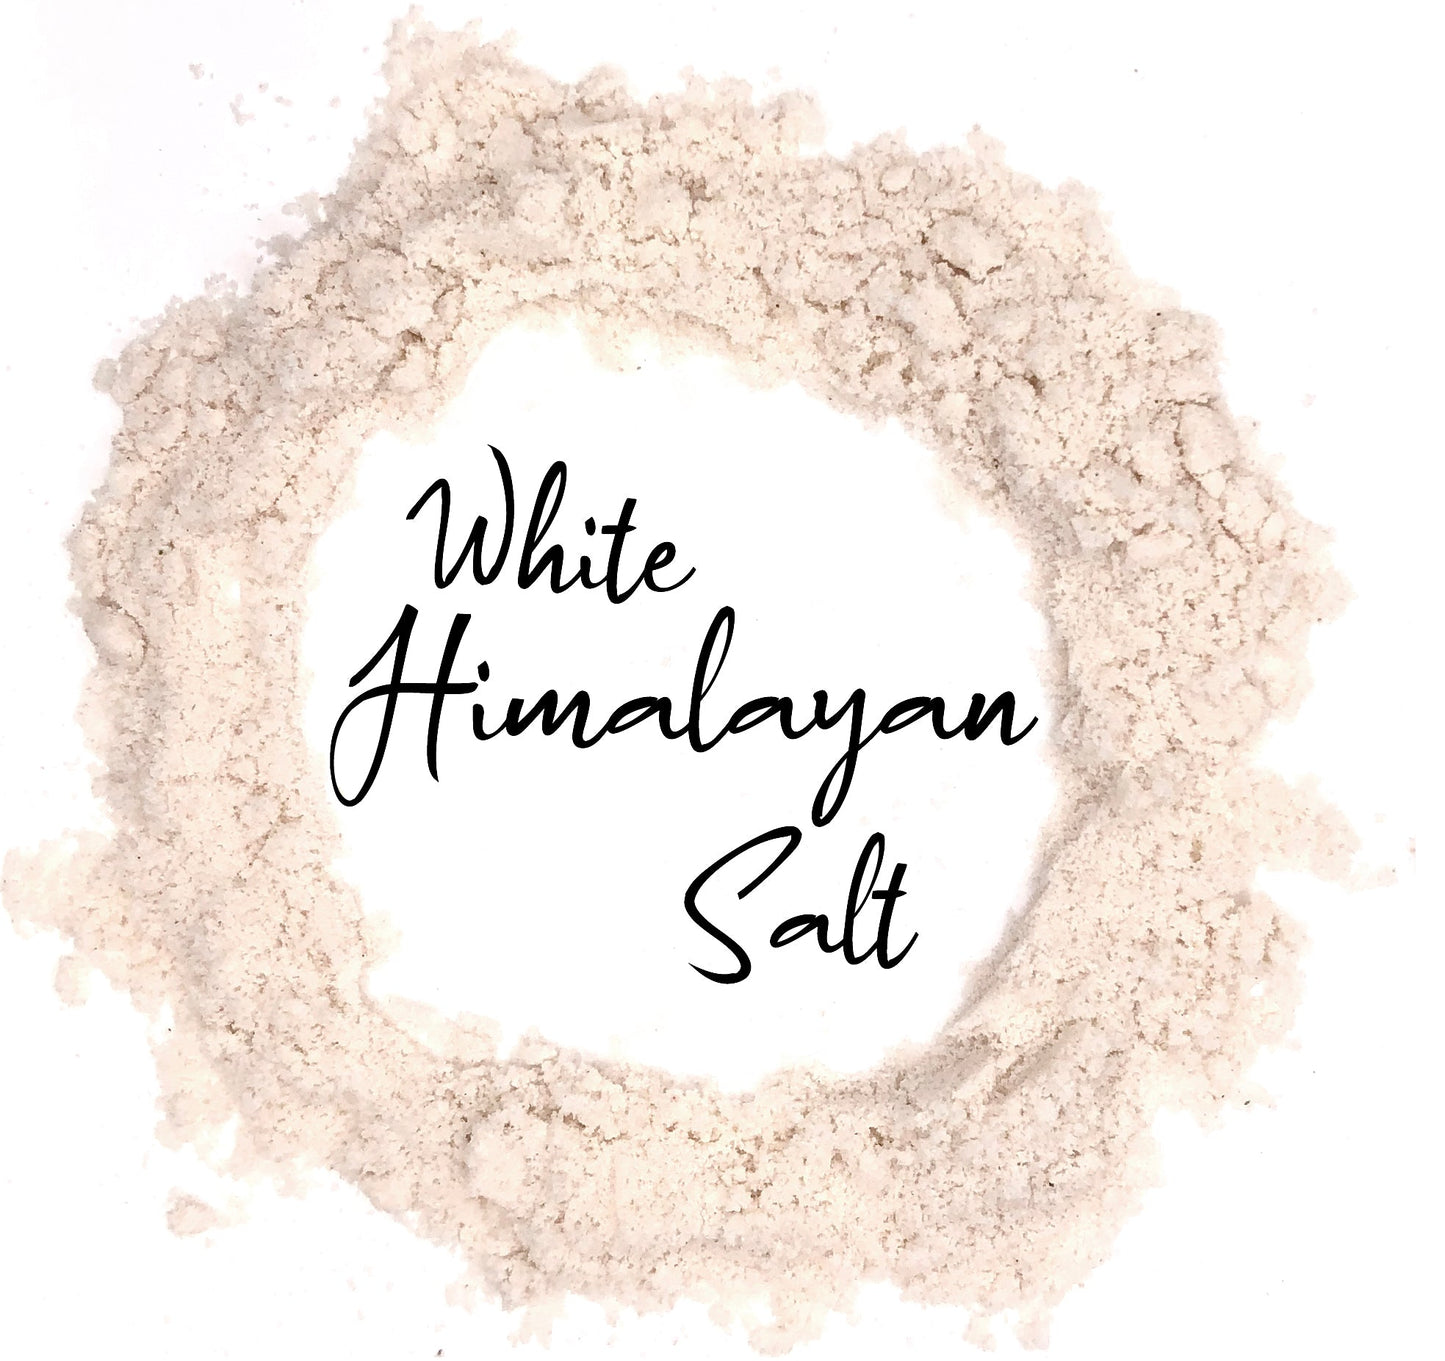 Wholesale Spices & Herbs - White Himalayan Salt, Fine Ground 6.7oz (192.2g) Jar